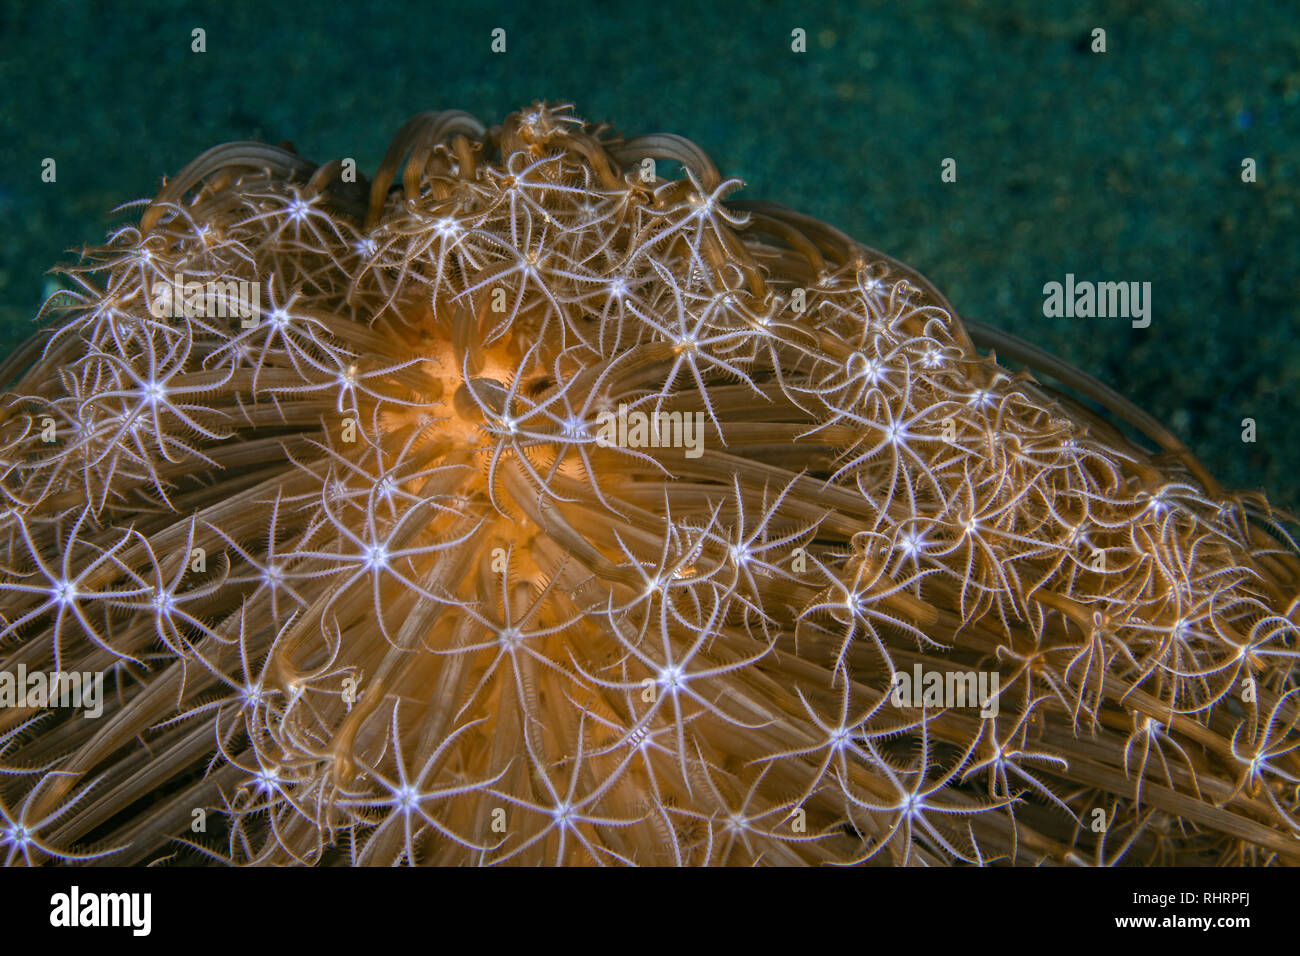 Schließen Sie herauf Bild von Veretillum sp. Meer pen am Meeresboden. Ambon, Indonesien Stockfoto